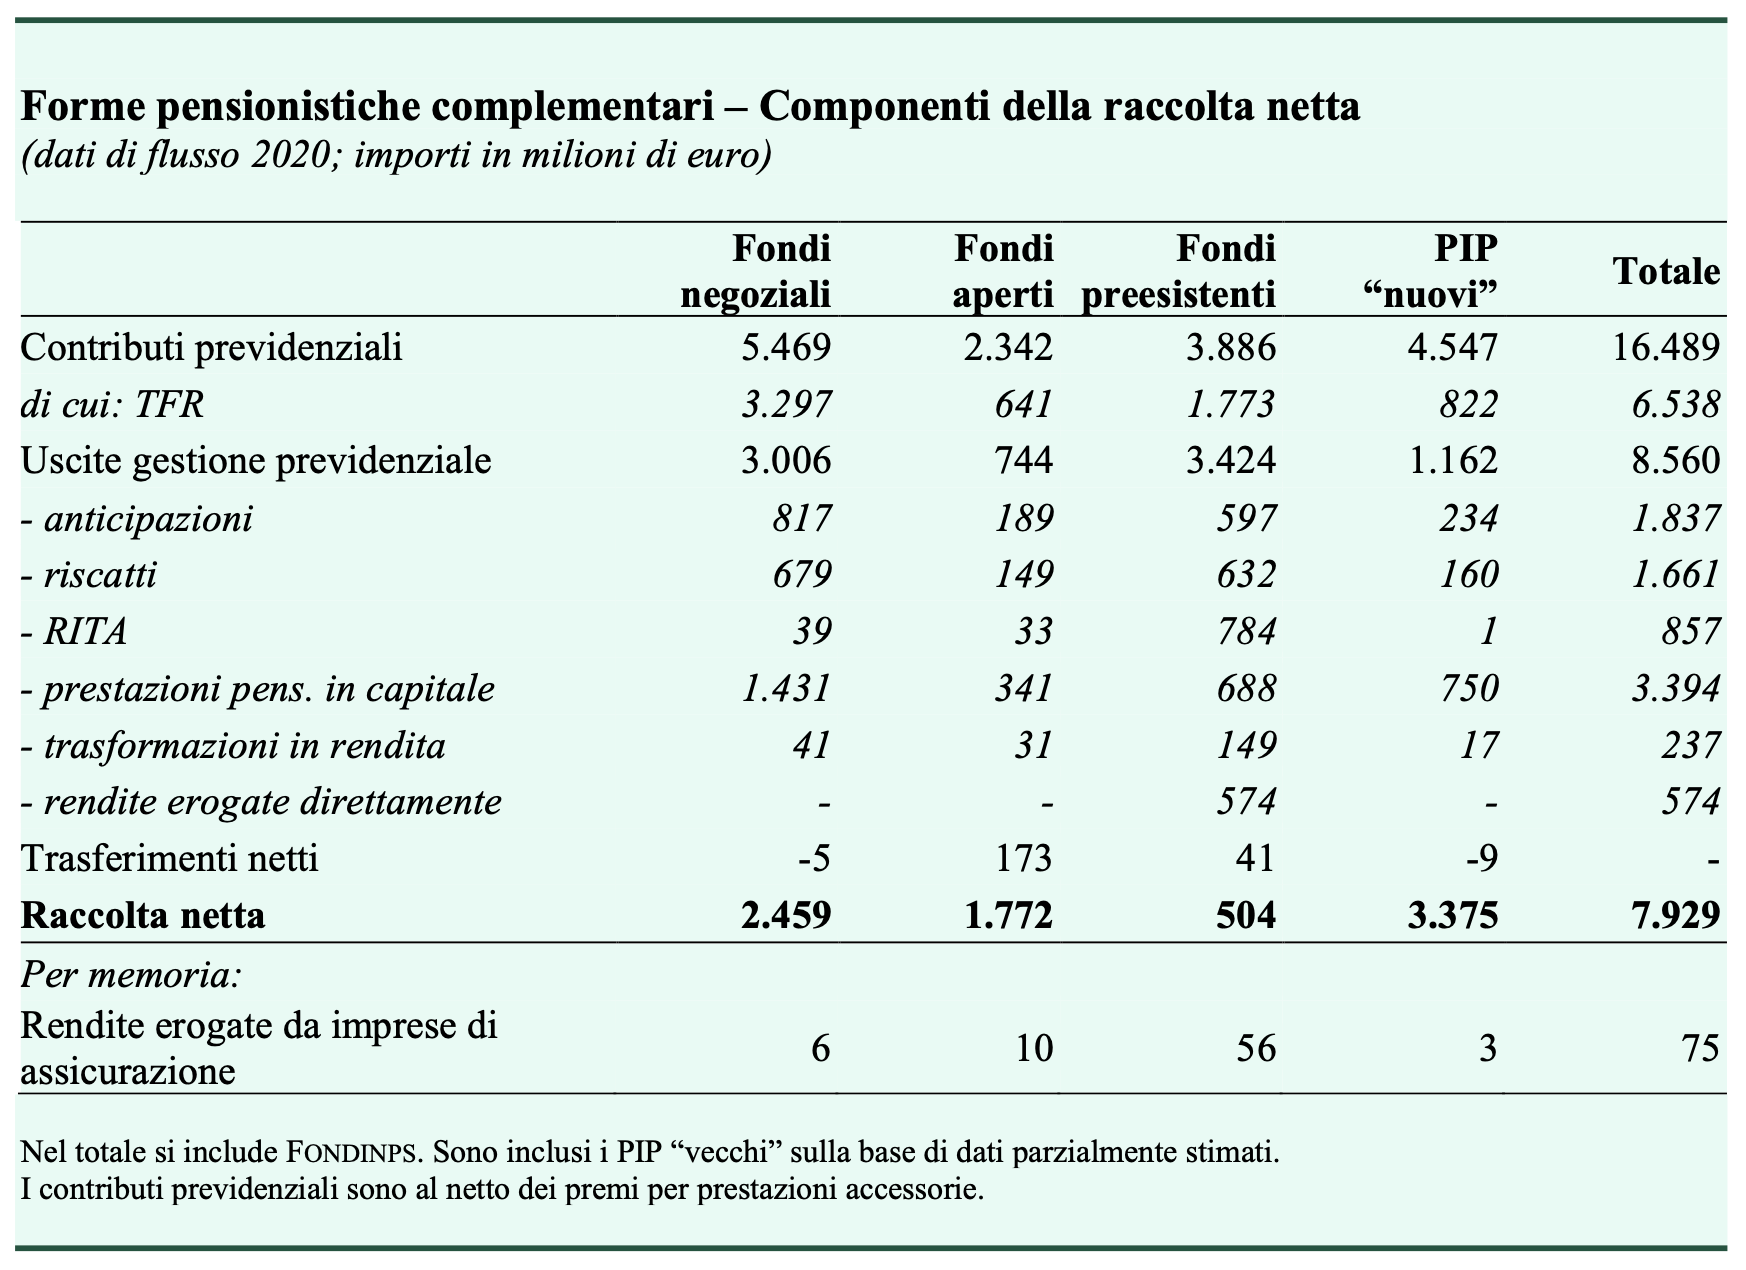 Tabella 2 – Componenti della raccolta netta nelle diverse forme pensionistiche complementari, valori in milioni di euro